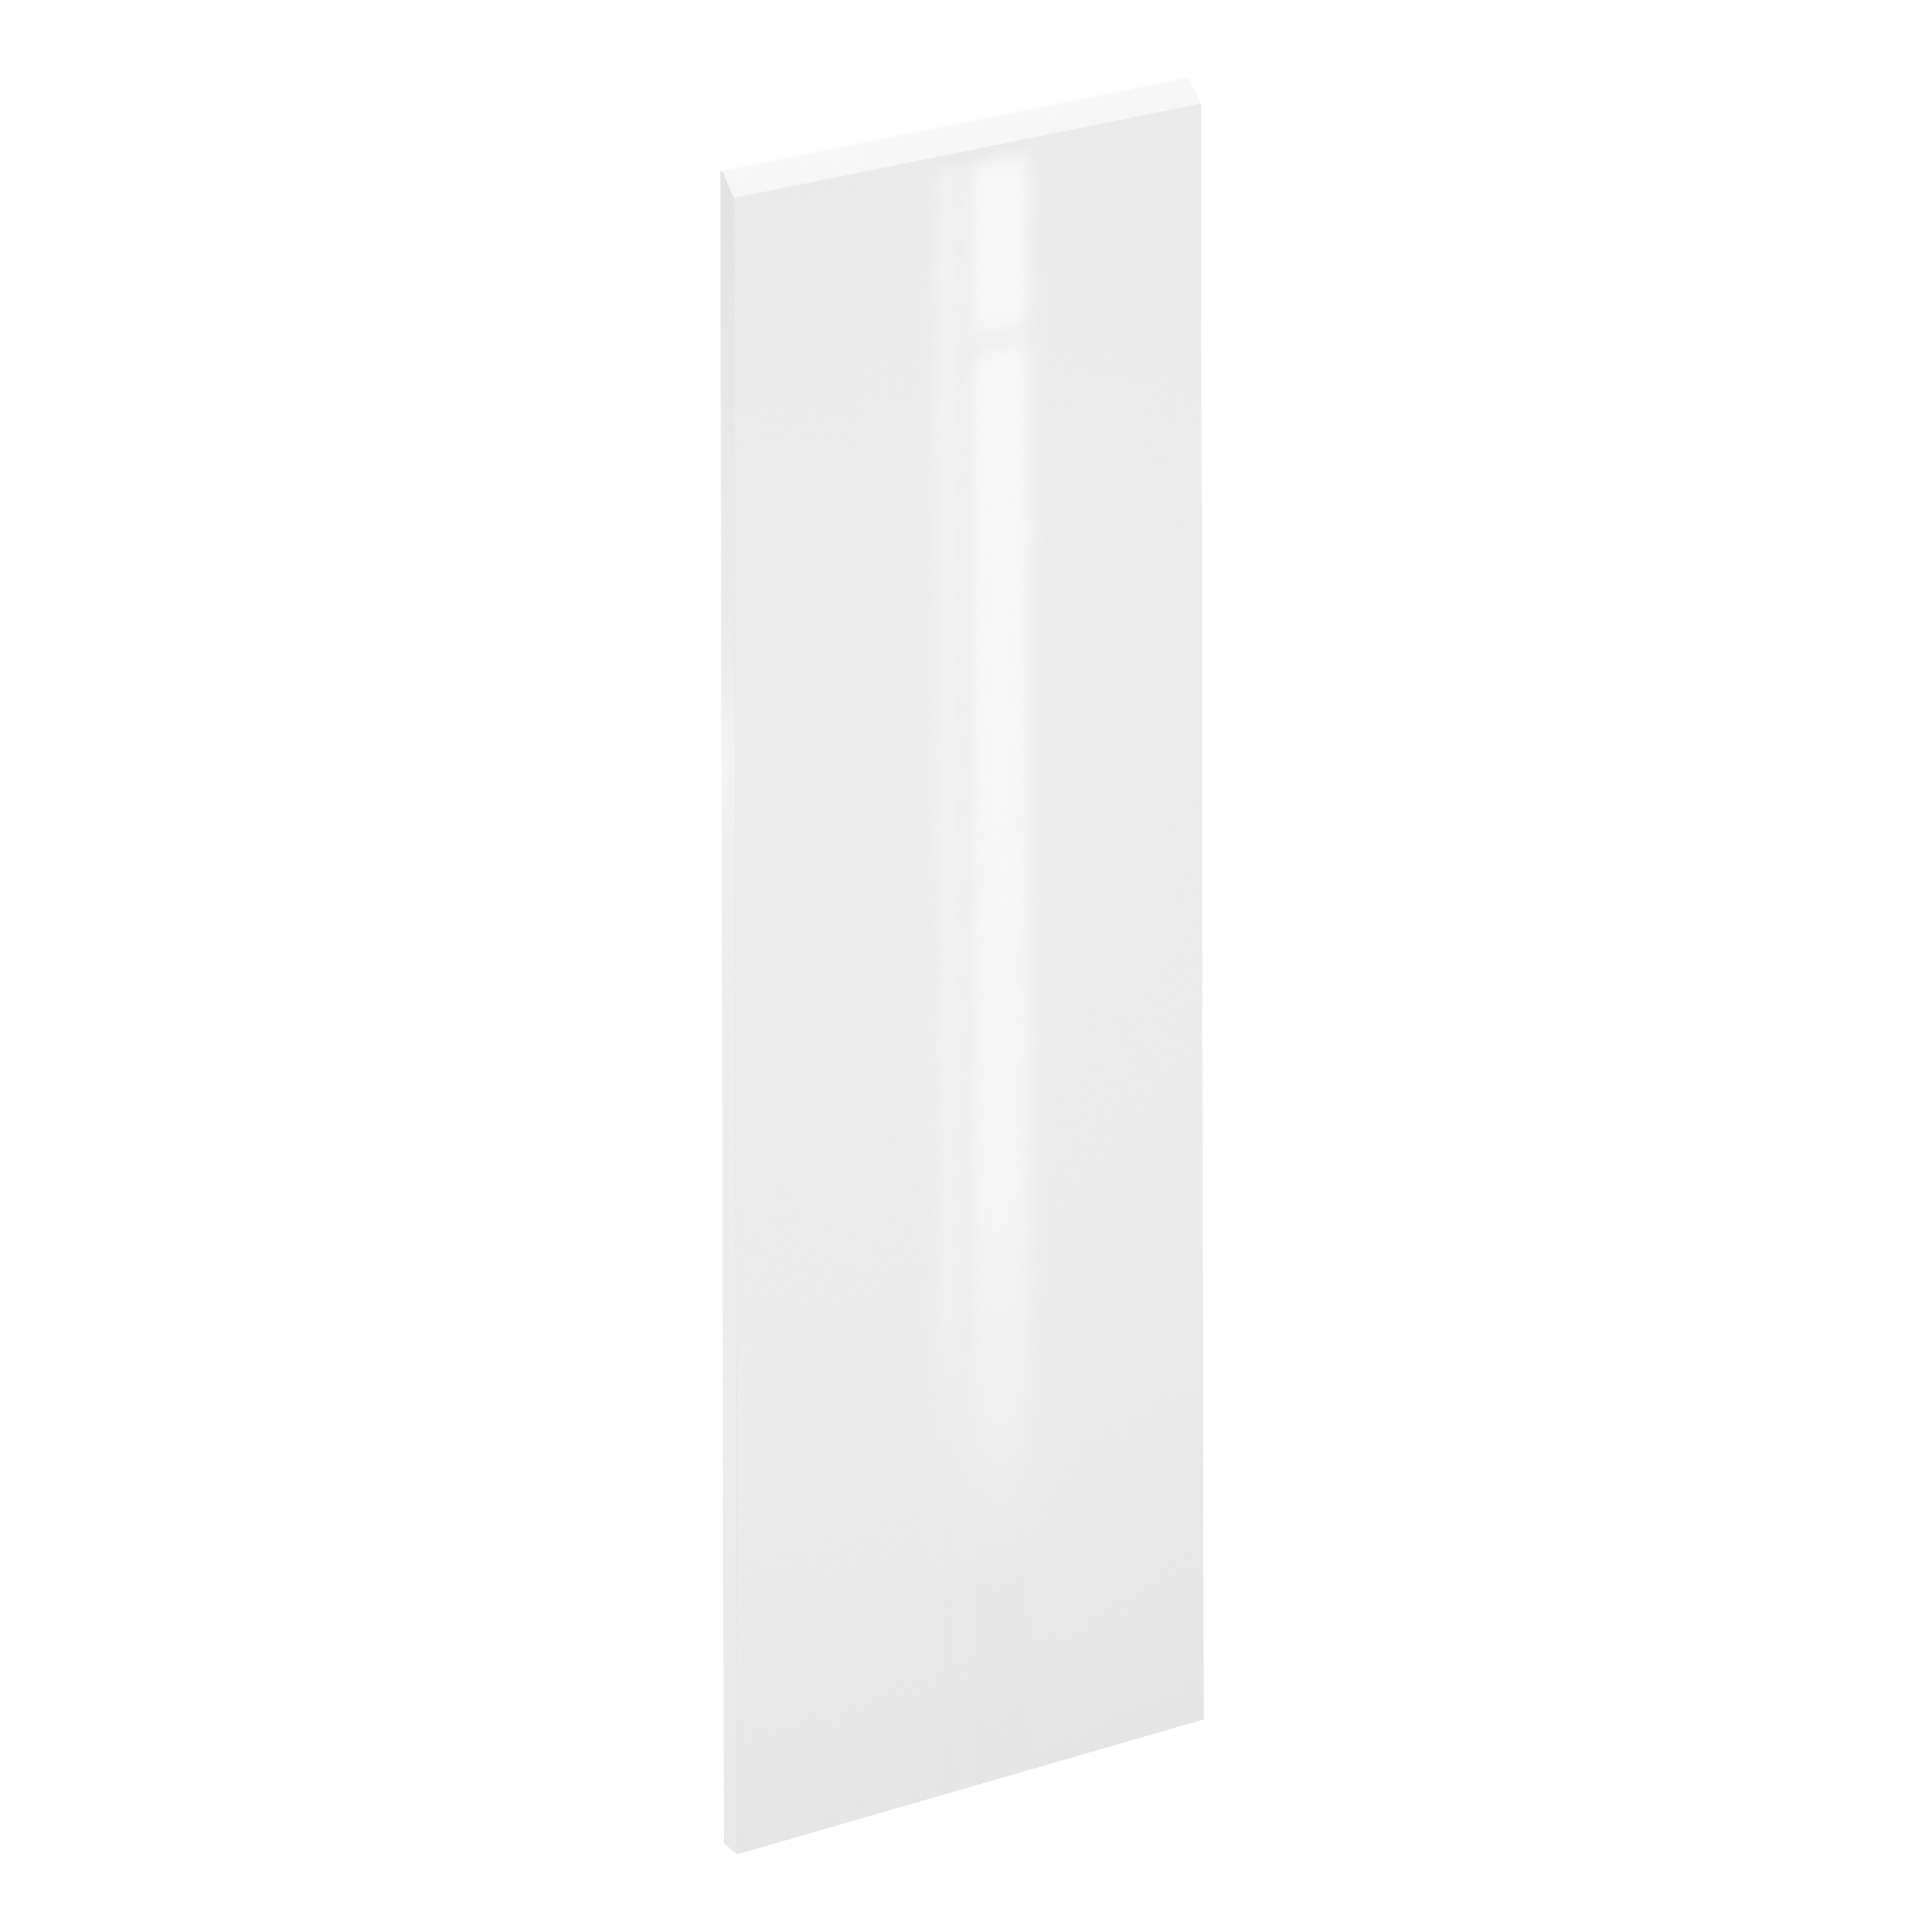 Puerta para mueble de cocina tokyo blanco brillo h 137.6 x l 45 cm